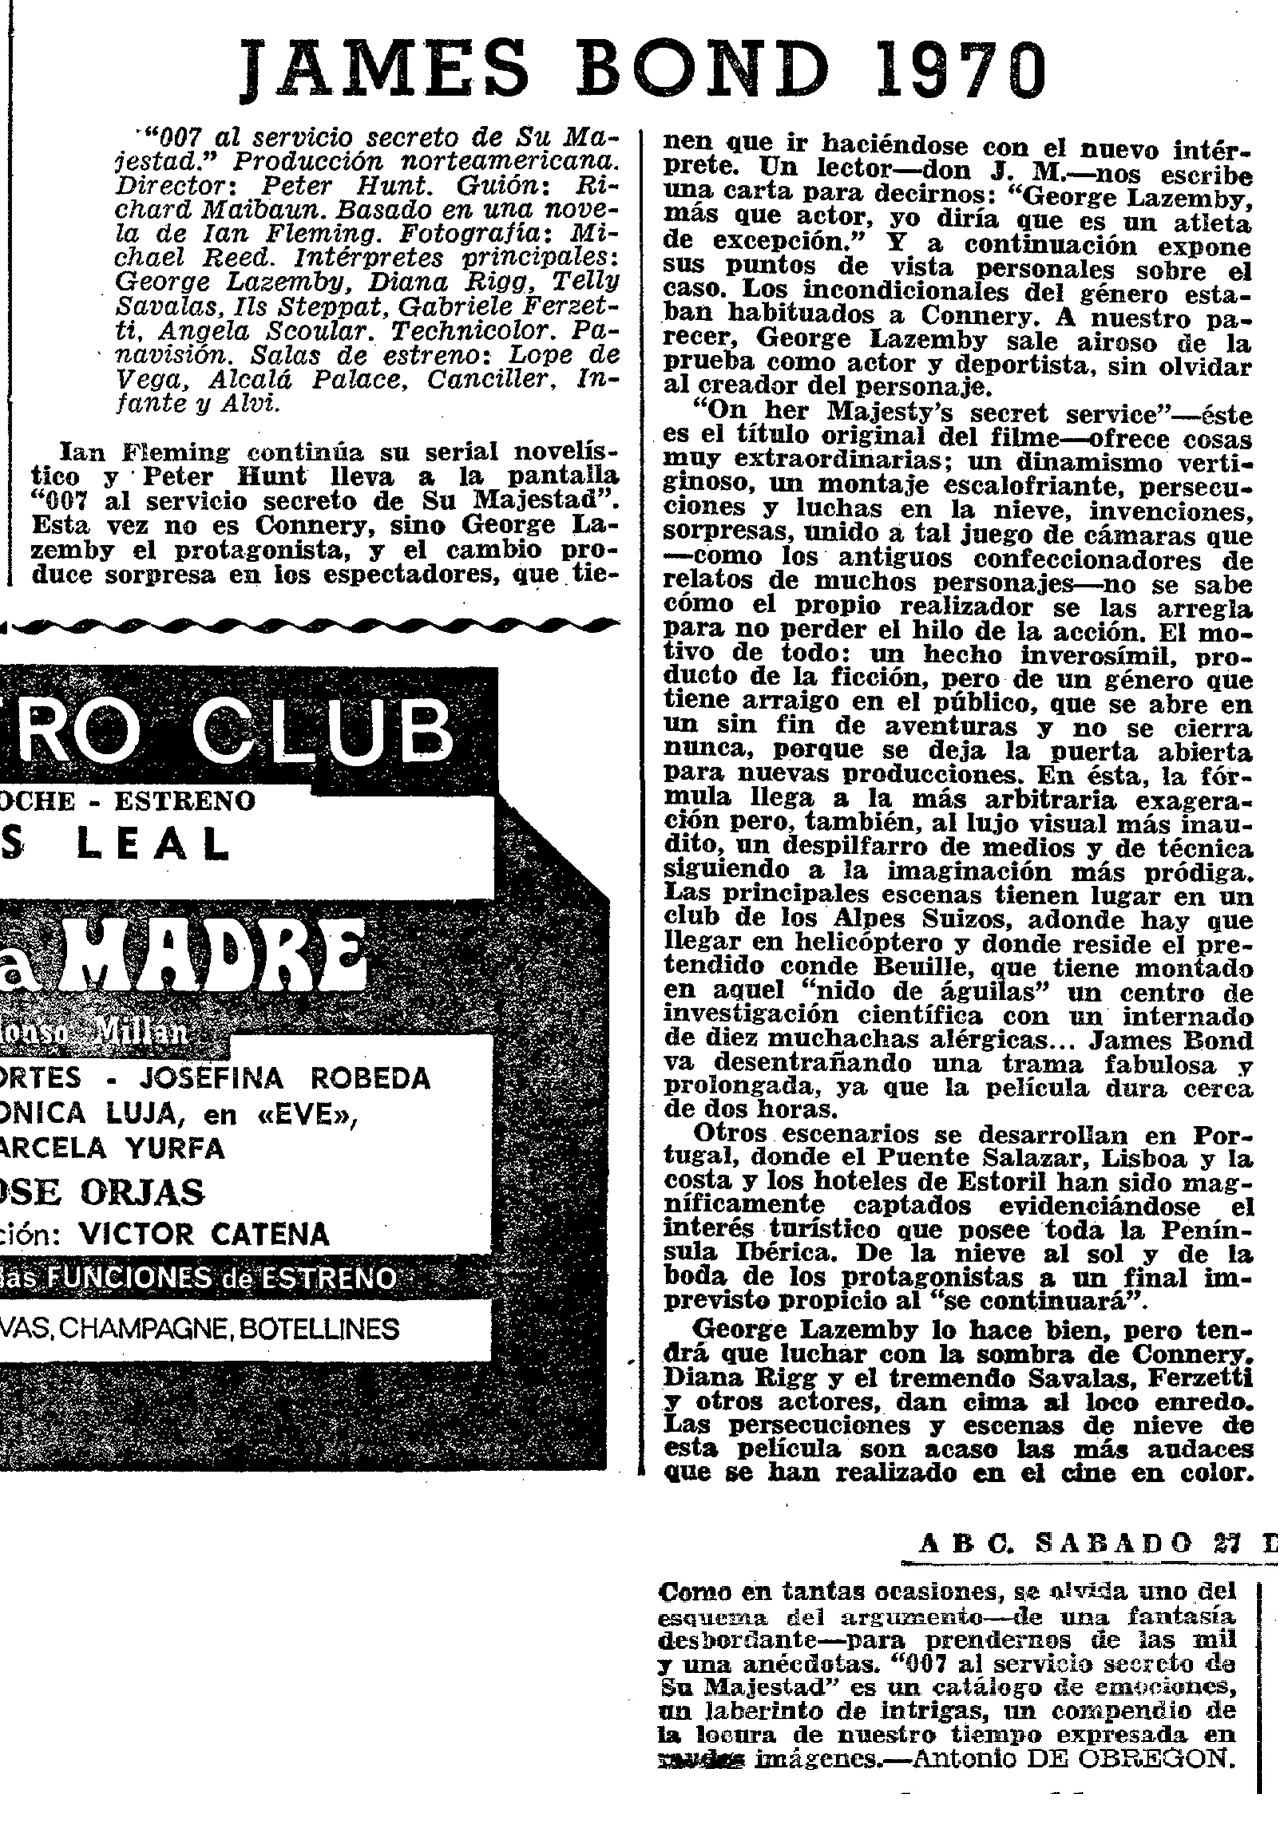 06 1969 12 27 ABC Madrid 083 084 Critica